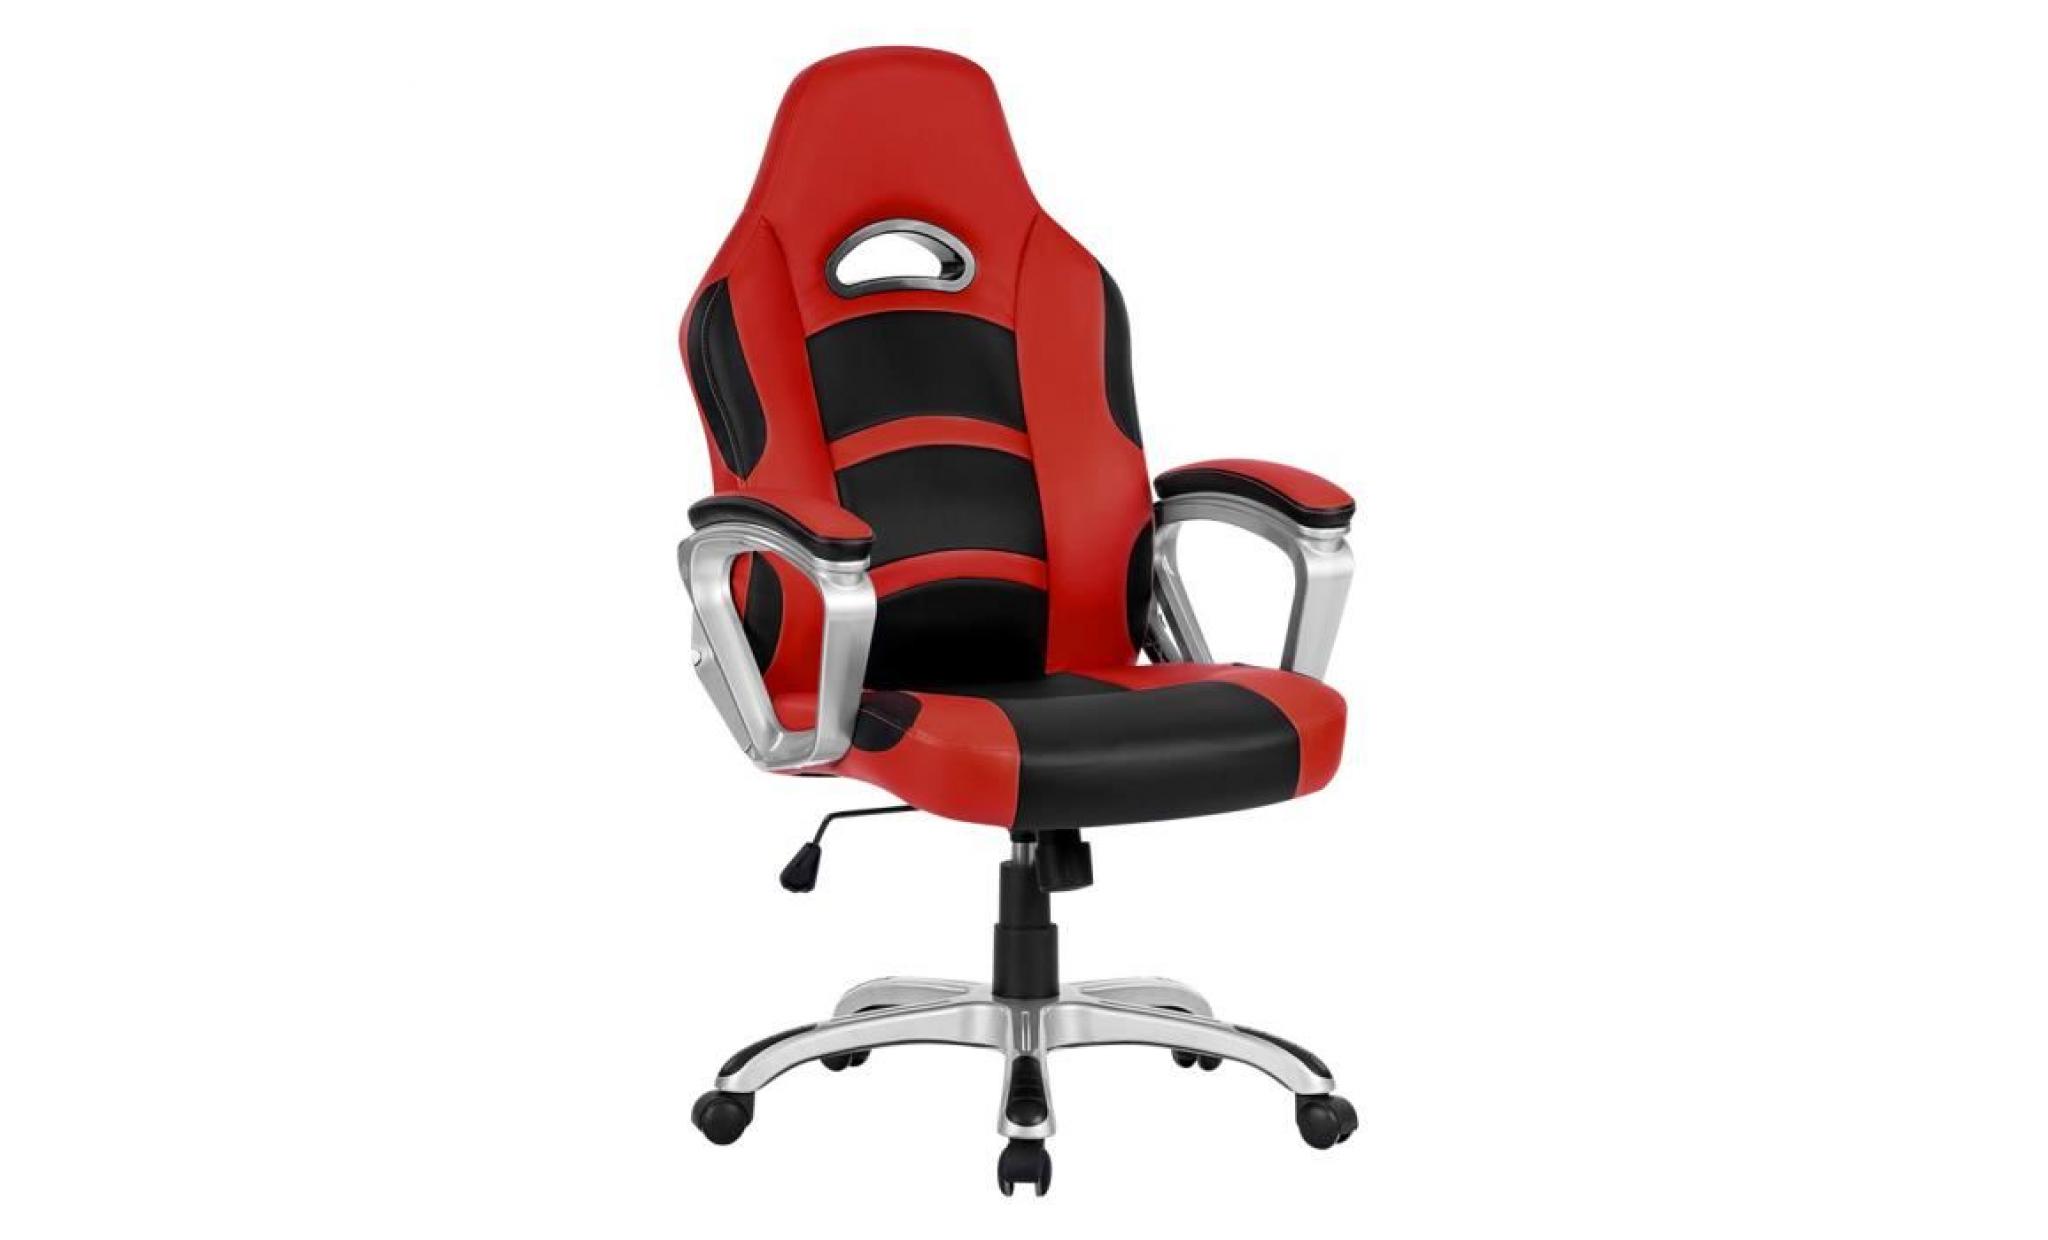 chaise de bureau langria ergonomique chaise dossier haut imitation cuir racing style jeux bureau faciles pas cher